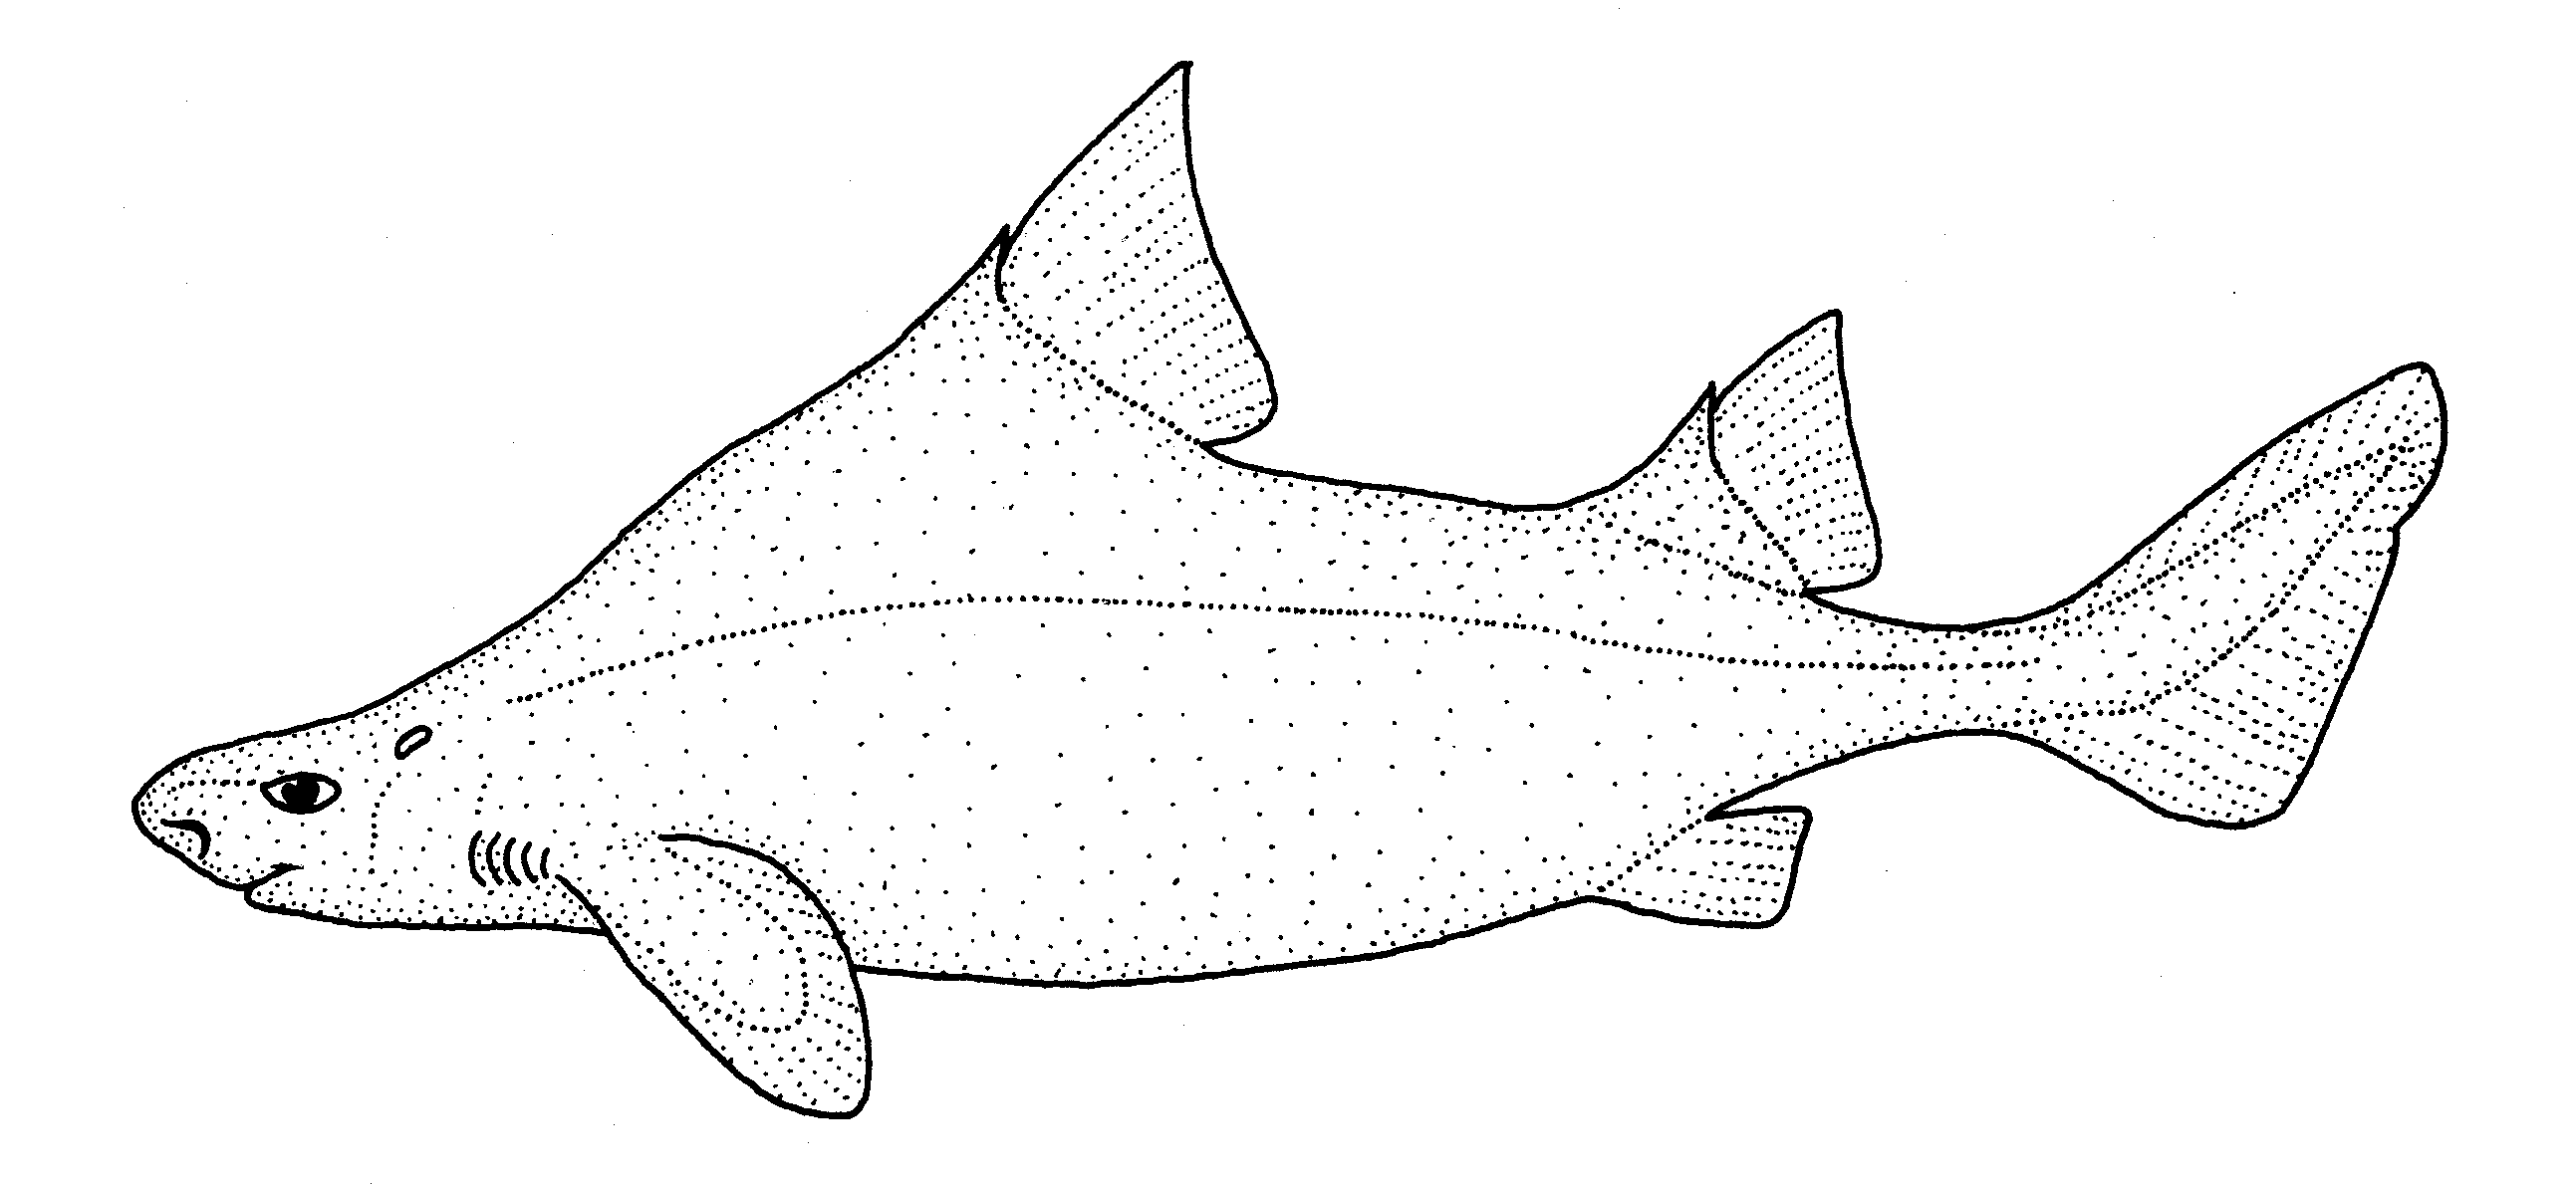  Centrine aiguille (Oxynotus bruniensis)